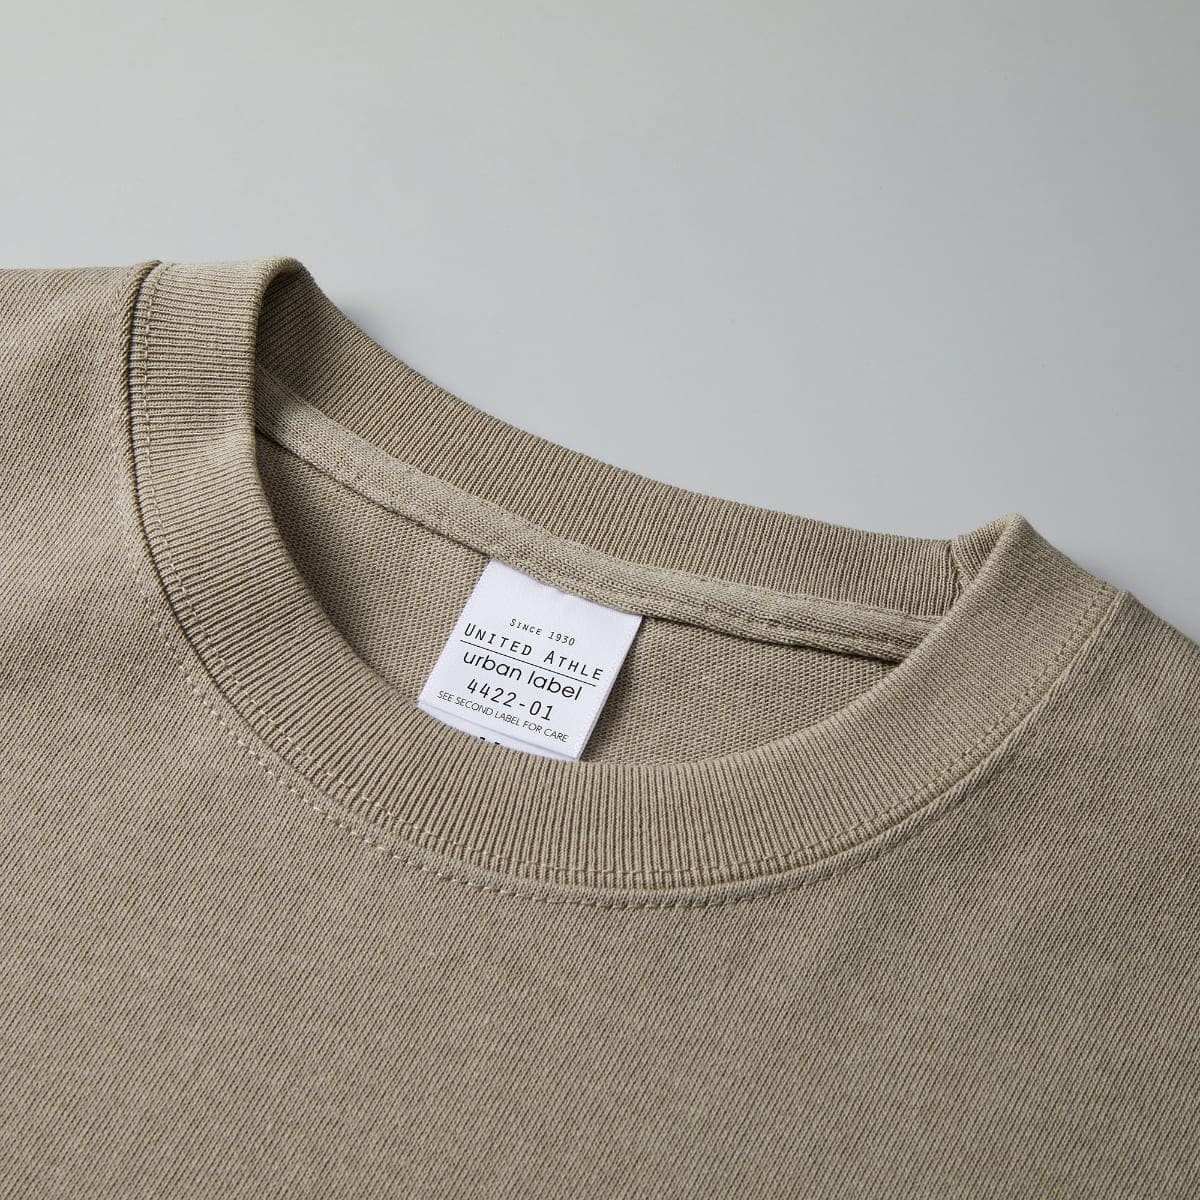 9.1オンス マグナムウェイト ビッグシルエット ロングスリーブ Tシャツ (2.1インチリブ) | メンズ | 1枚 | 4422-01 | ブラック